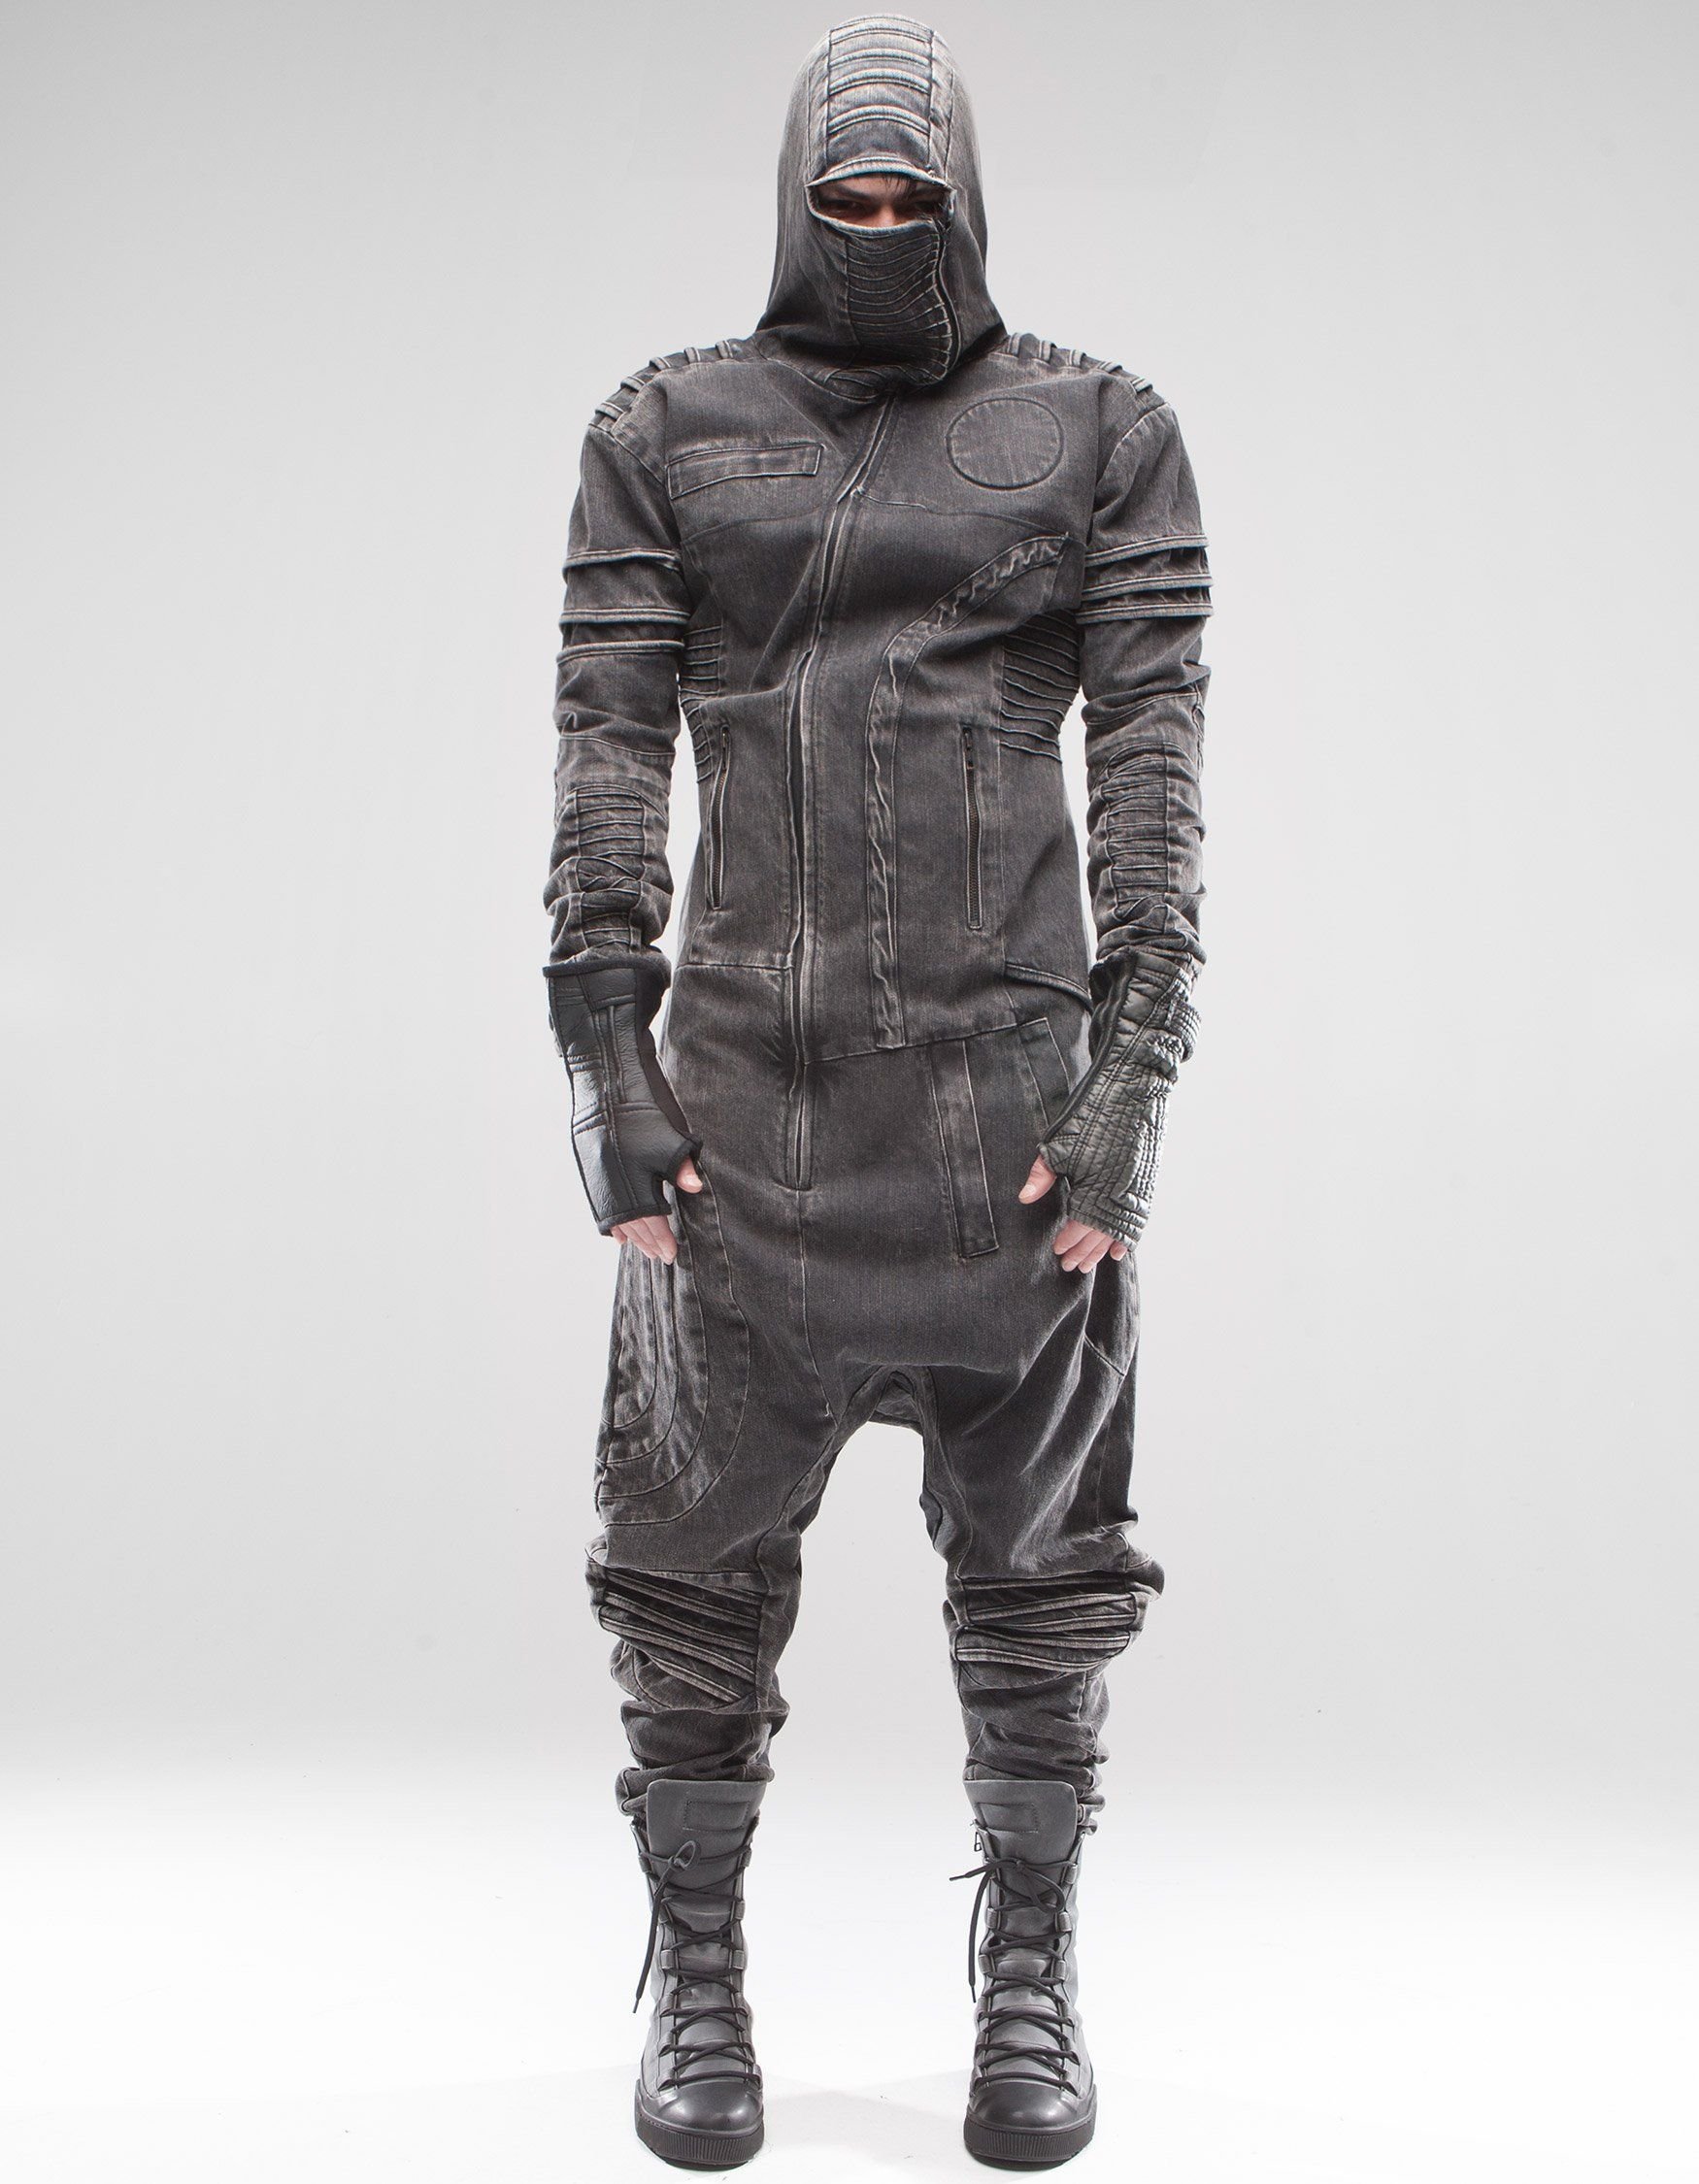 Cyberpunk стиль одежды мужской фото 14